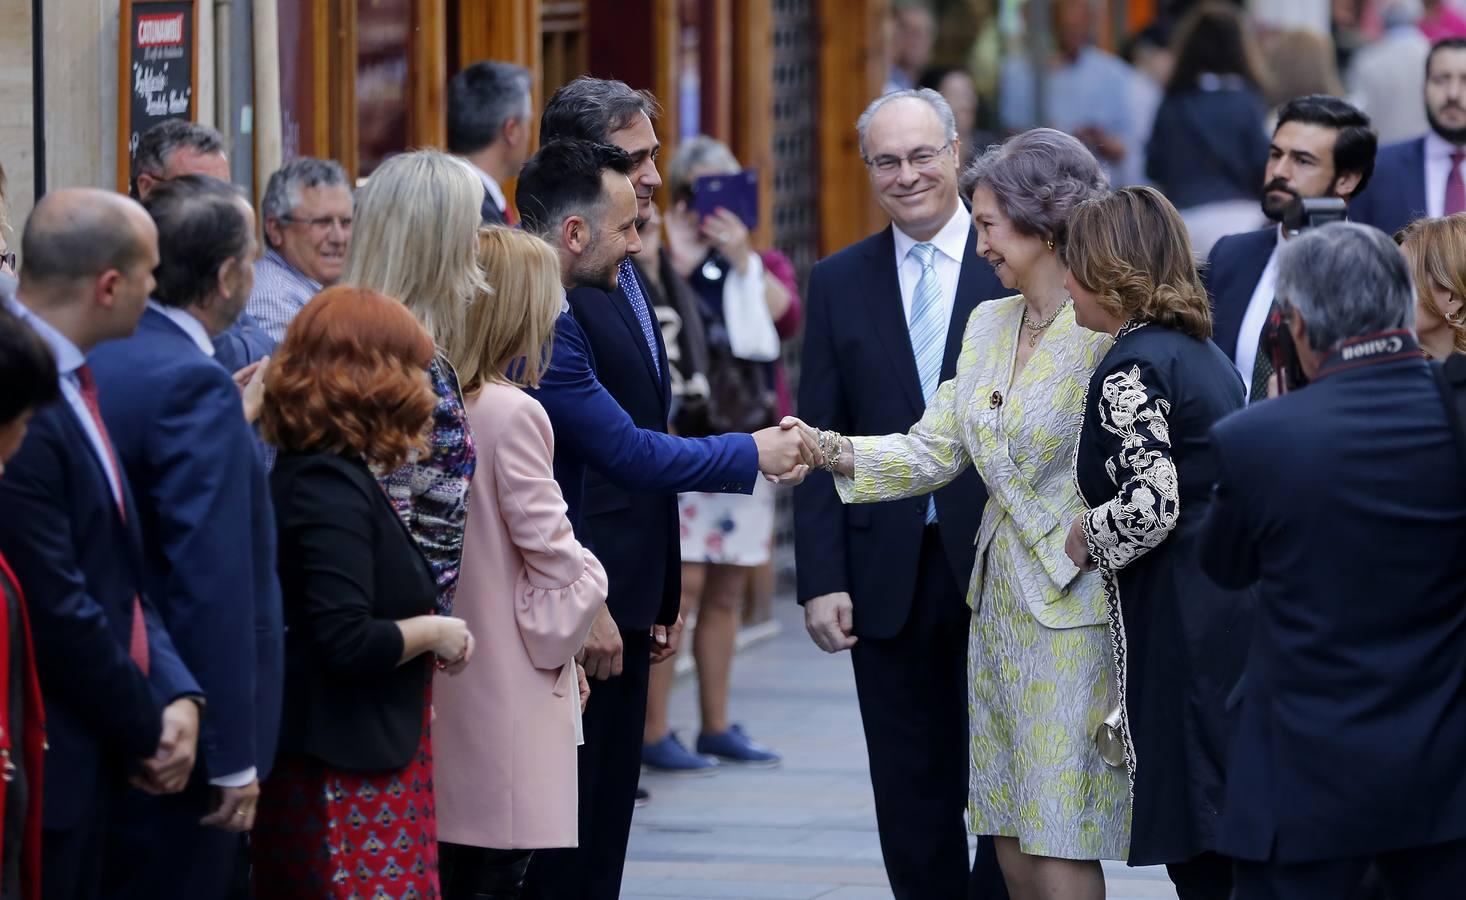 La visita de la Reina Doña Sofía a Córdoba, en imágenes